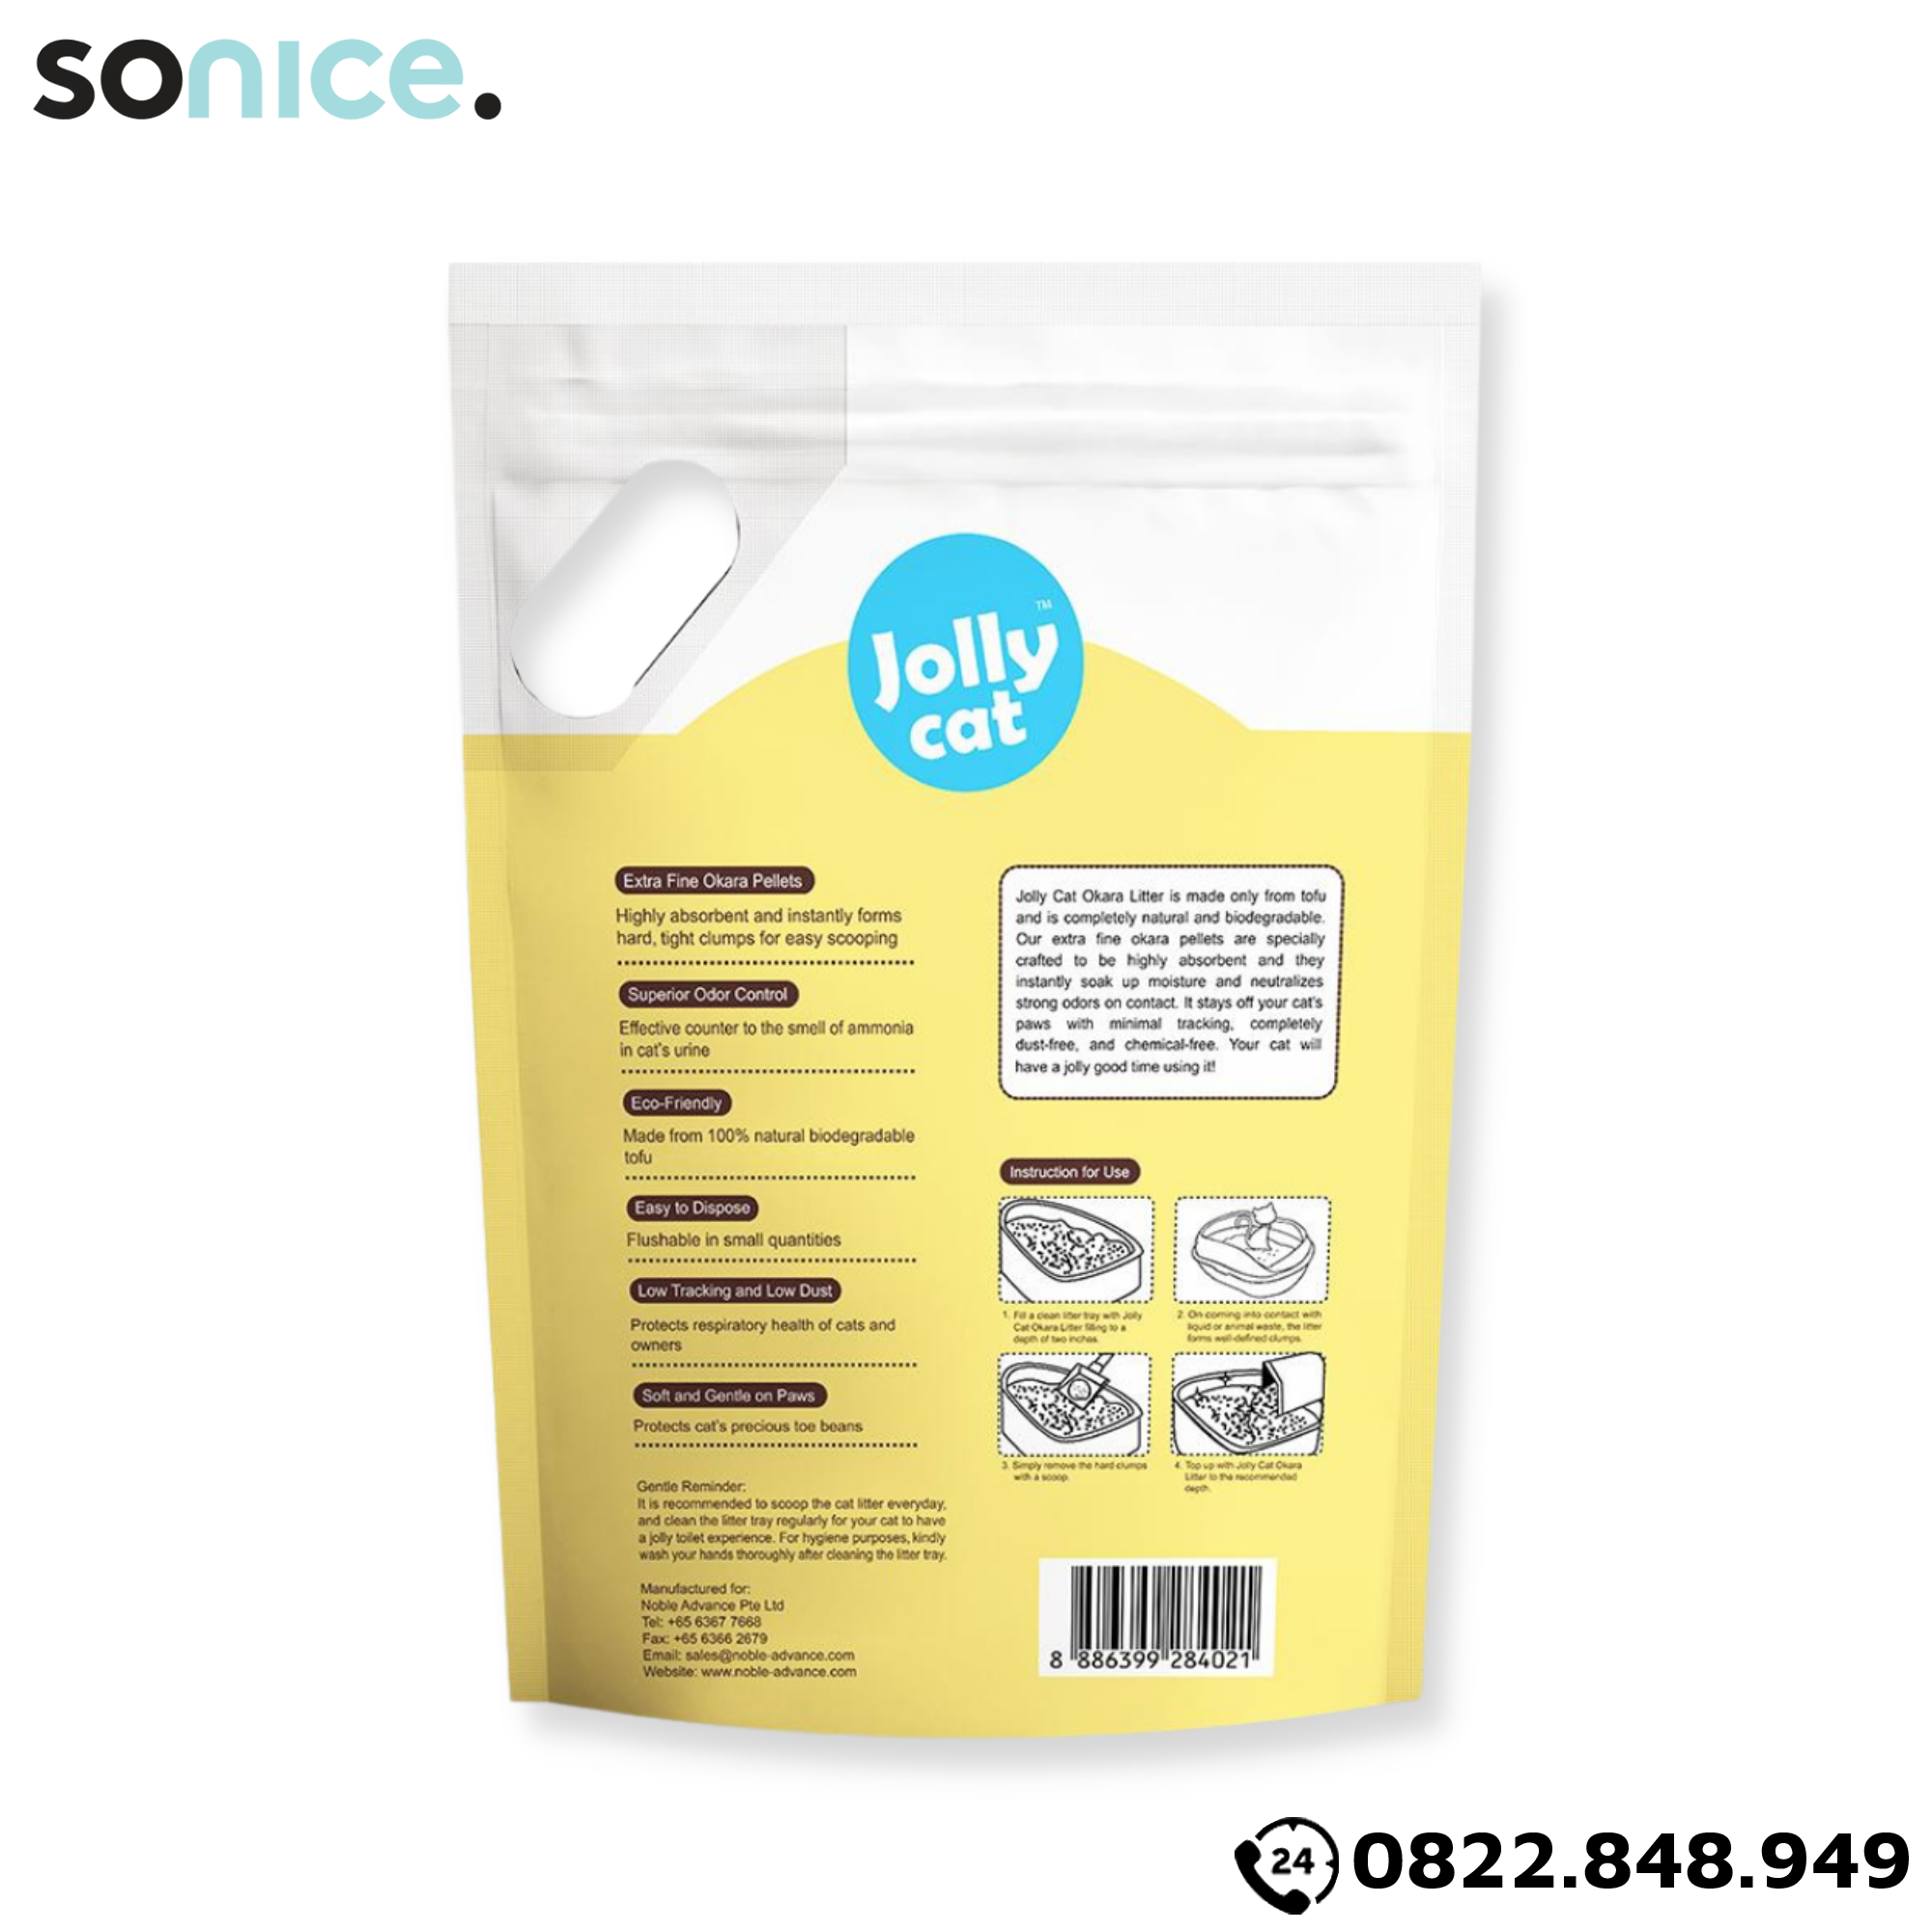  Cát vệ sinh Premium Tofu Jolly Cat Litter Corn 6L - Làm từ đậu nành soya hương bắp SONICE. 